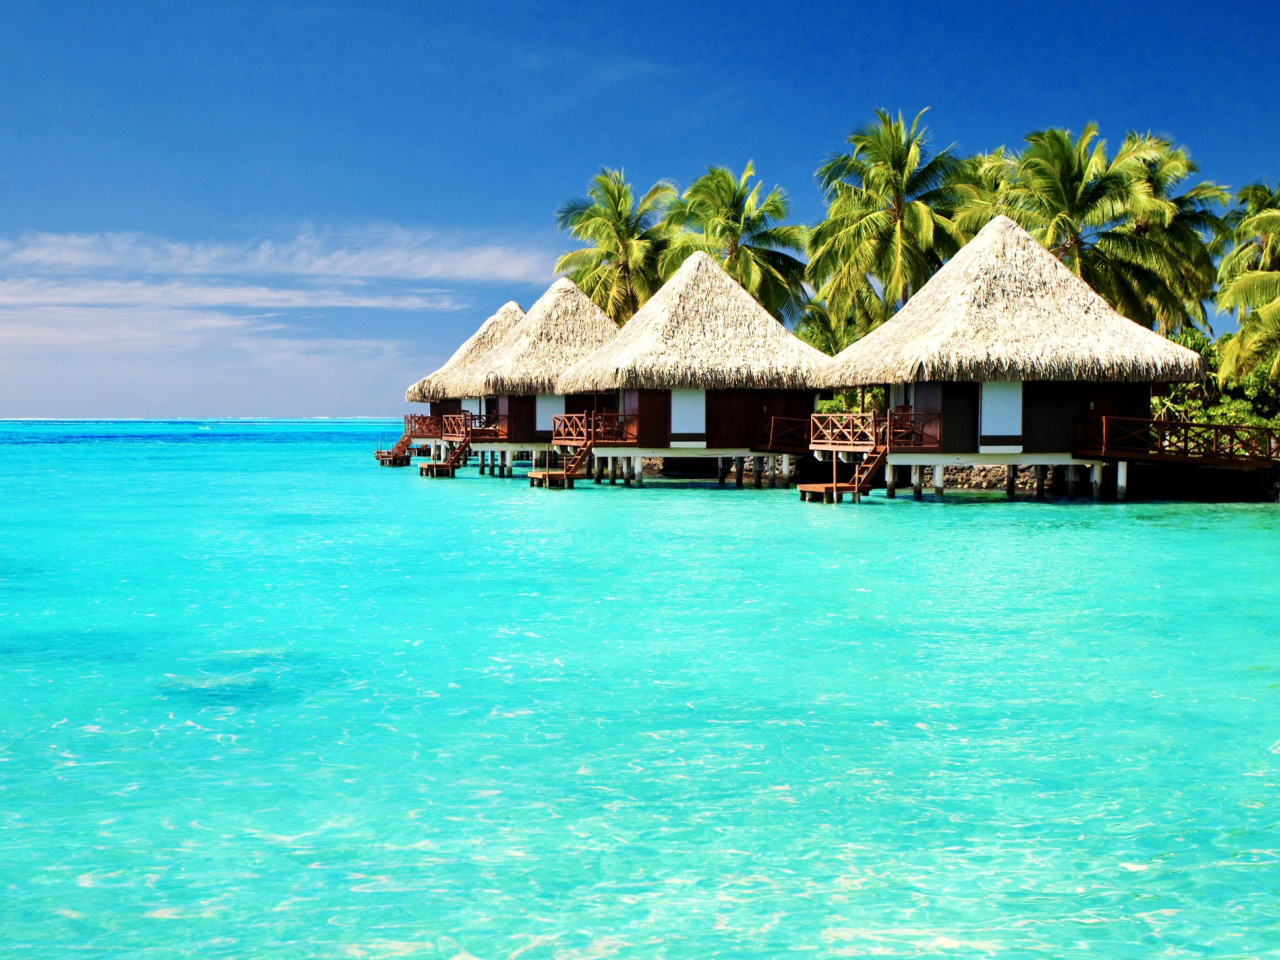 Maldives Islands best Destination for Honeymoon screenshot #1 1280x960